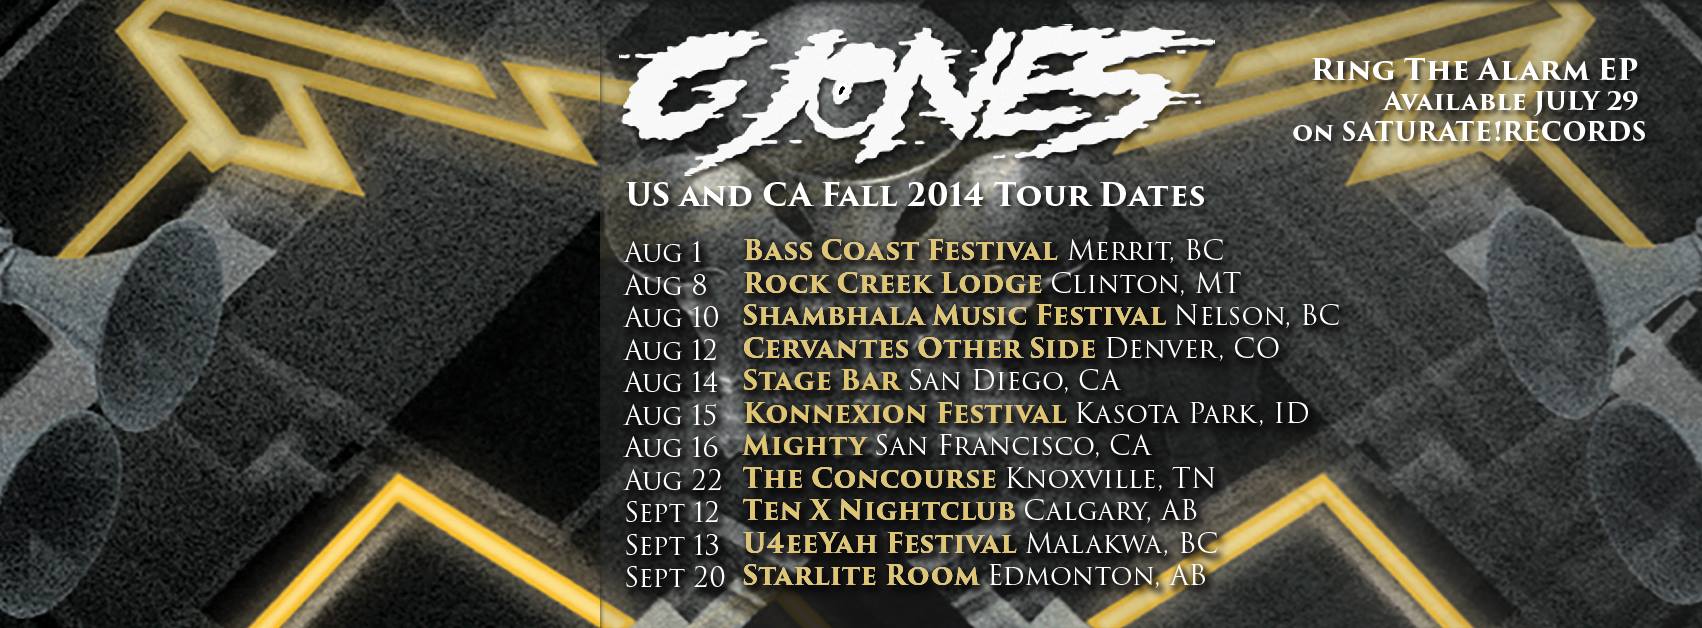 G Jones summer tour